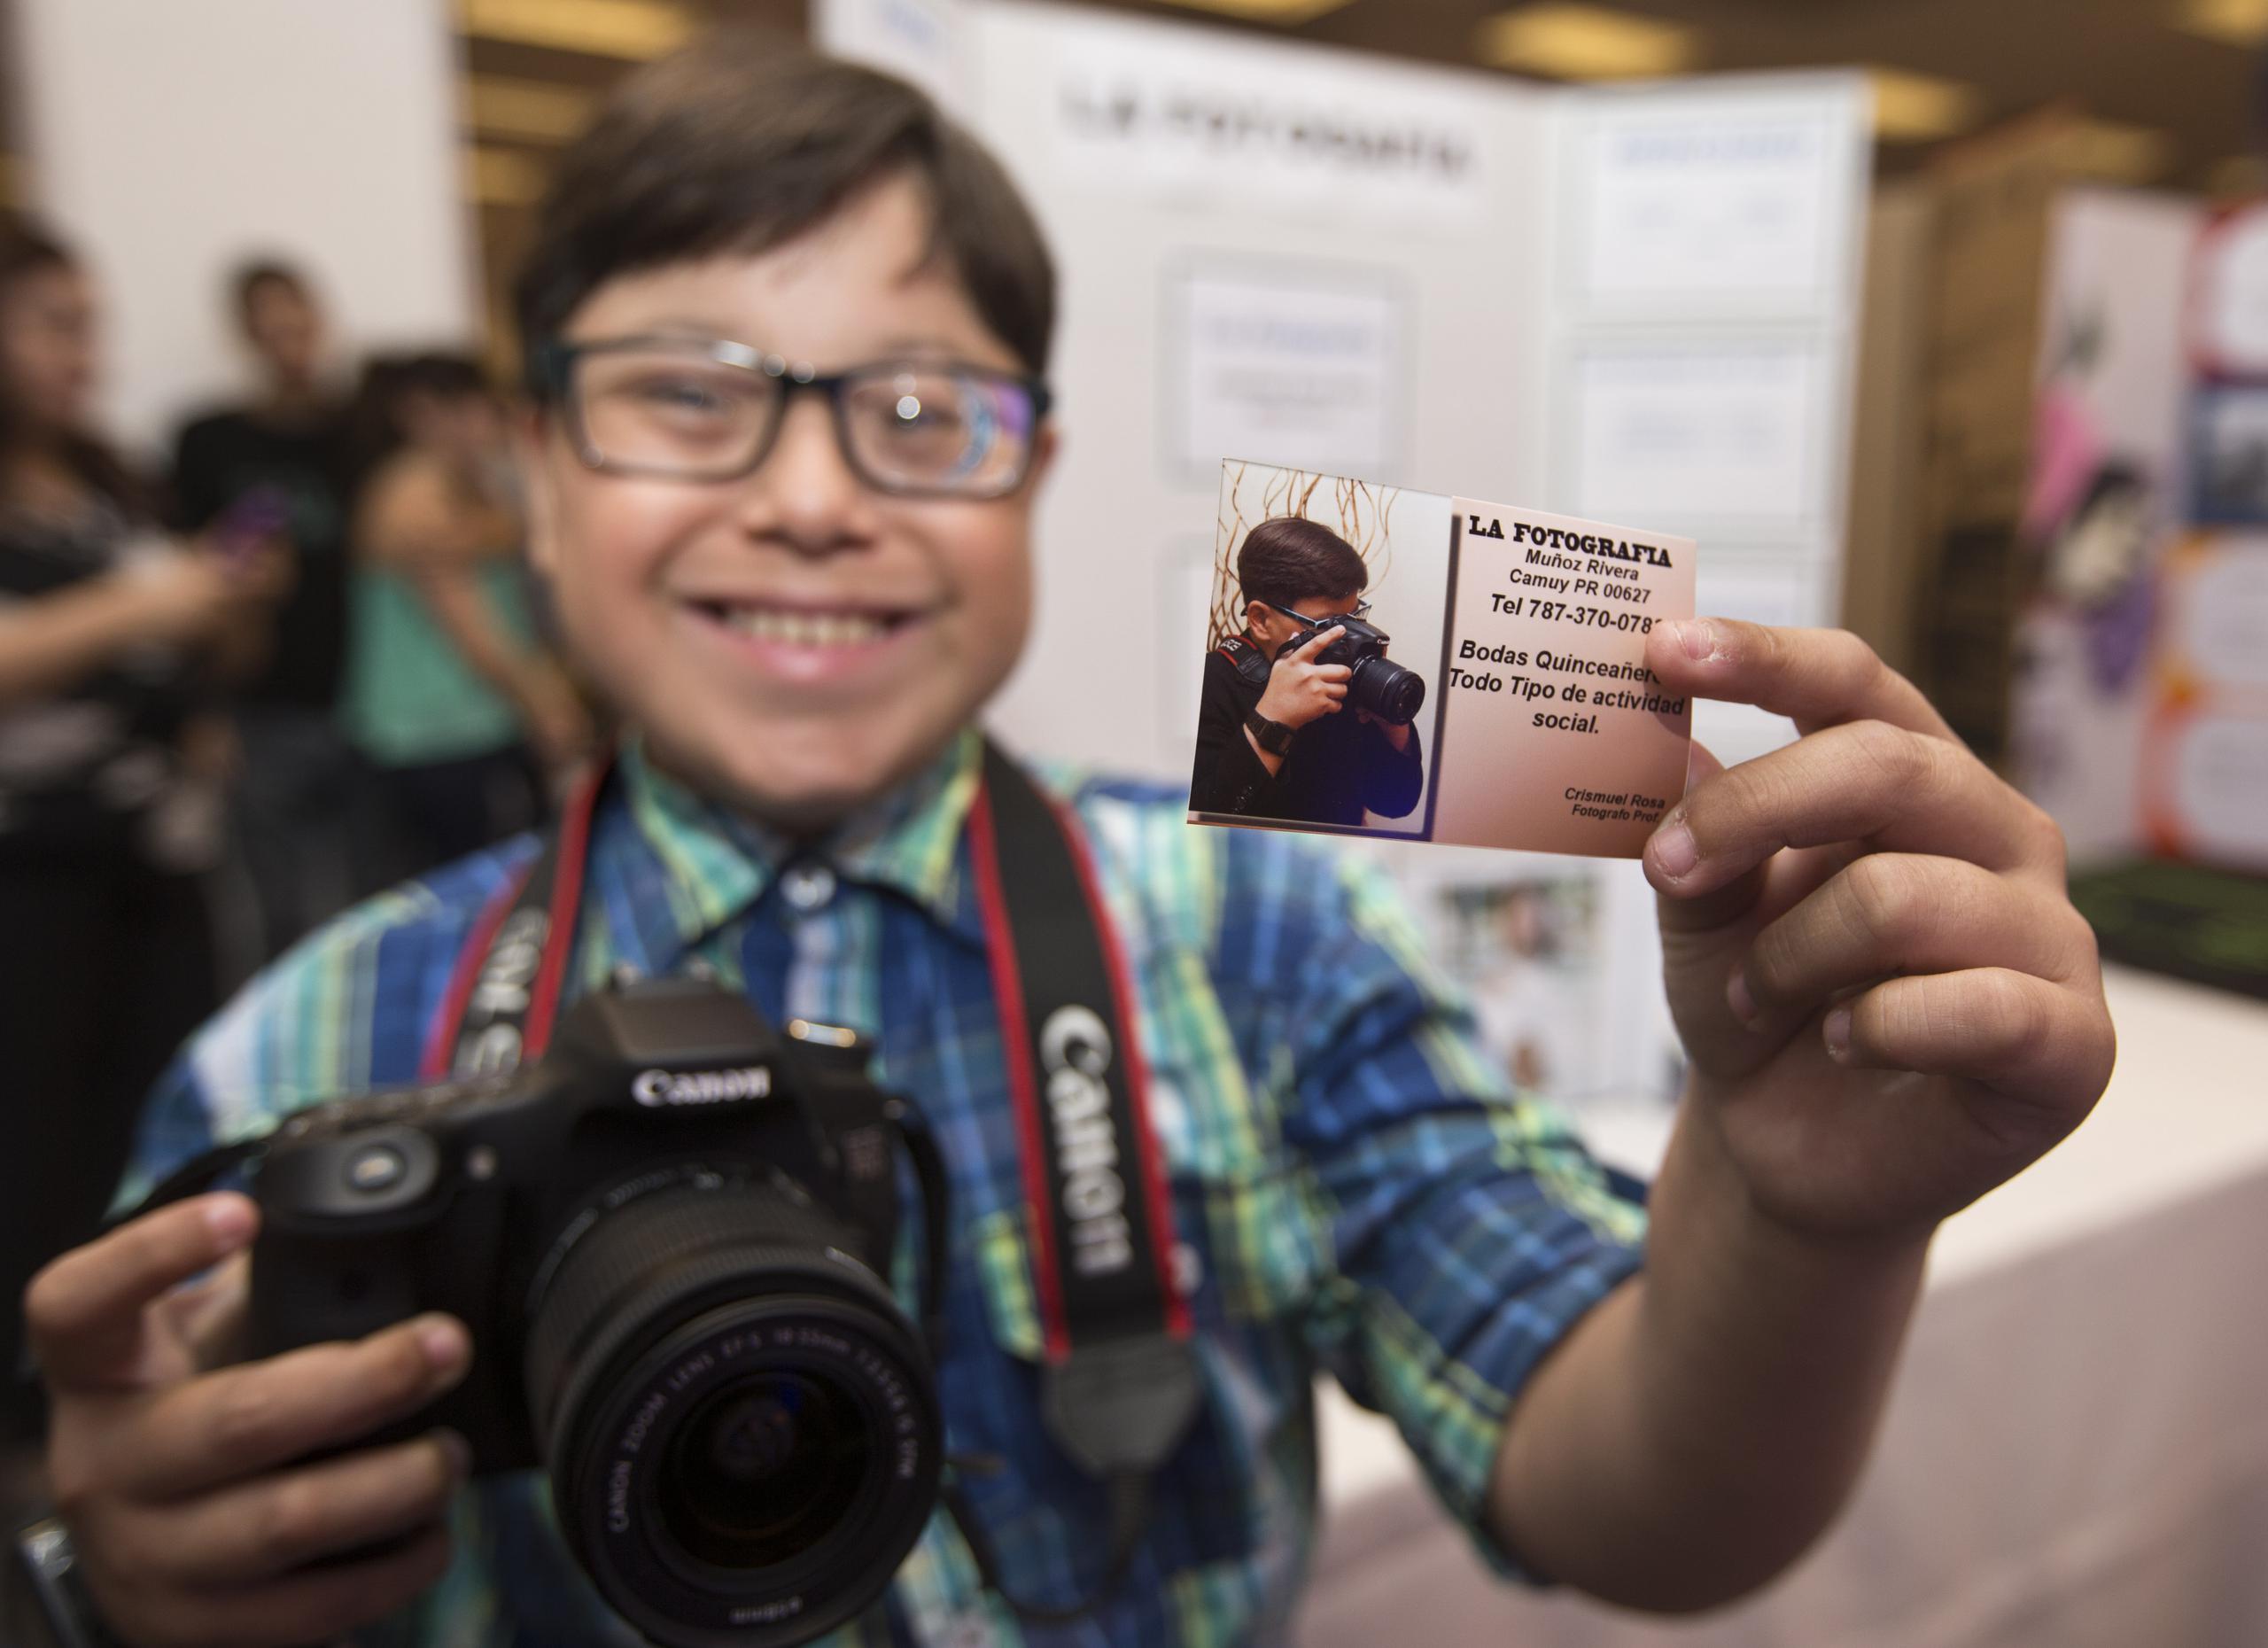 Uno de los participantes de la iniciativa, el estudiante de 12 años Crismuel Rosa Soto, exhibe orgulloso su tarjeta de presentación como fotógrafo. (JORGE.RAMIREZ@GFRMEDIA.COM)